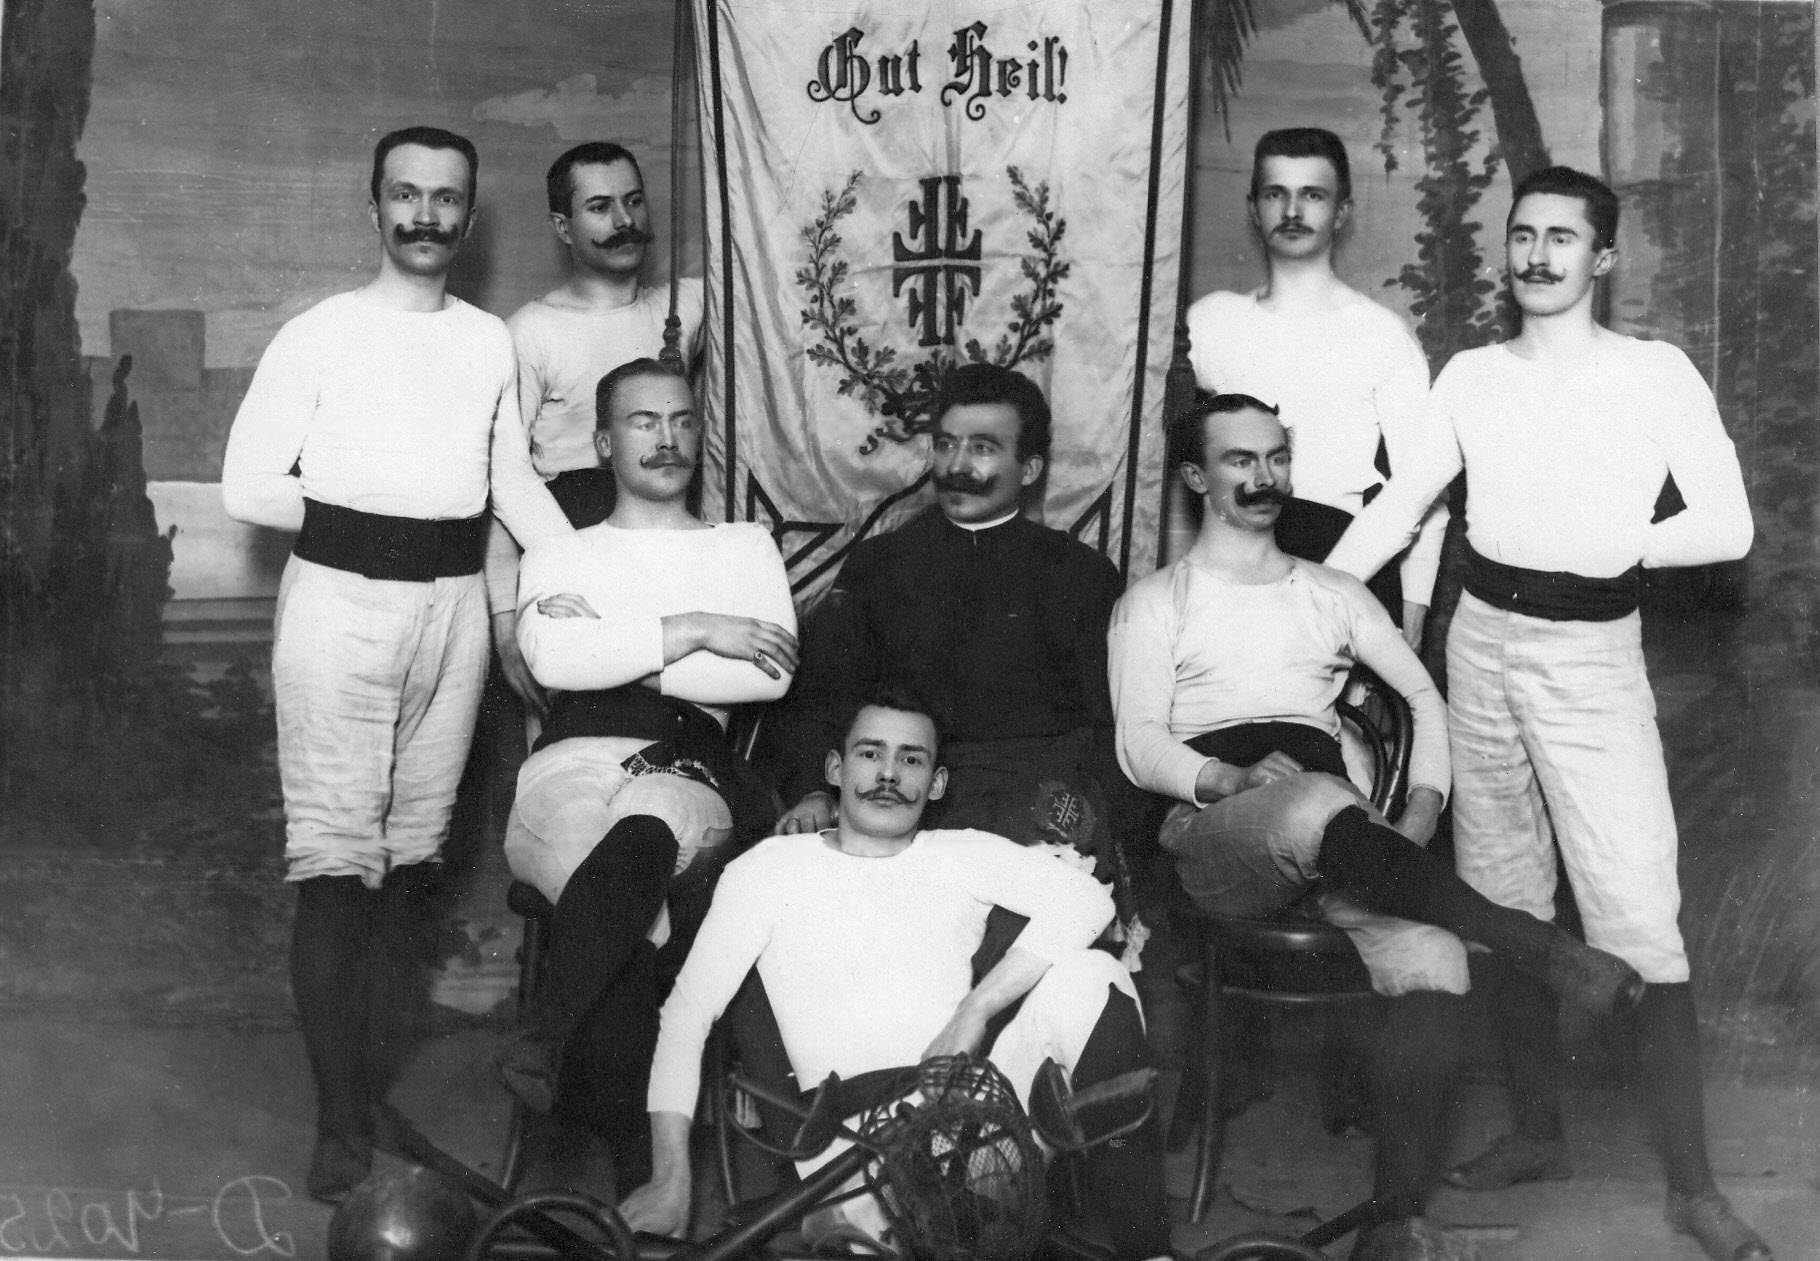 Гимнастическое общество «Пальма» в 1910-х годах.